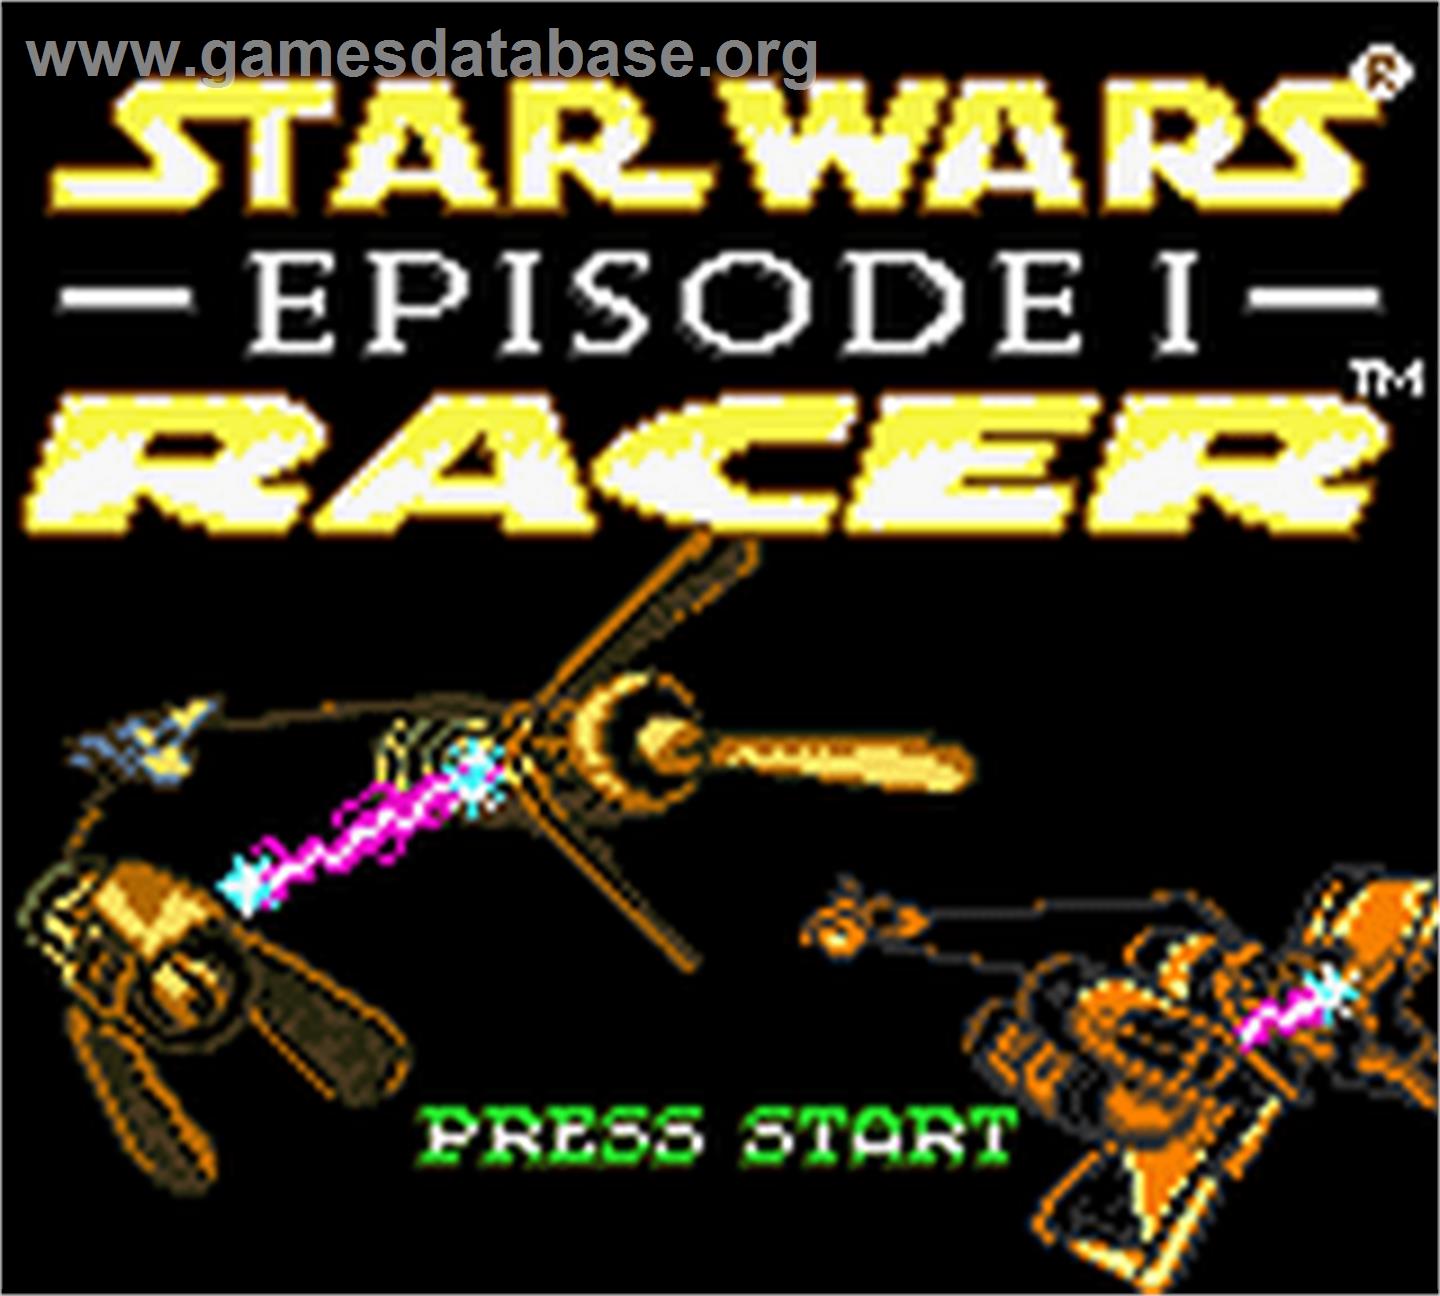 Star Wars: Episode I: Racer - Nintendo Game Boy Color - Artwork - Title Screen